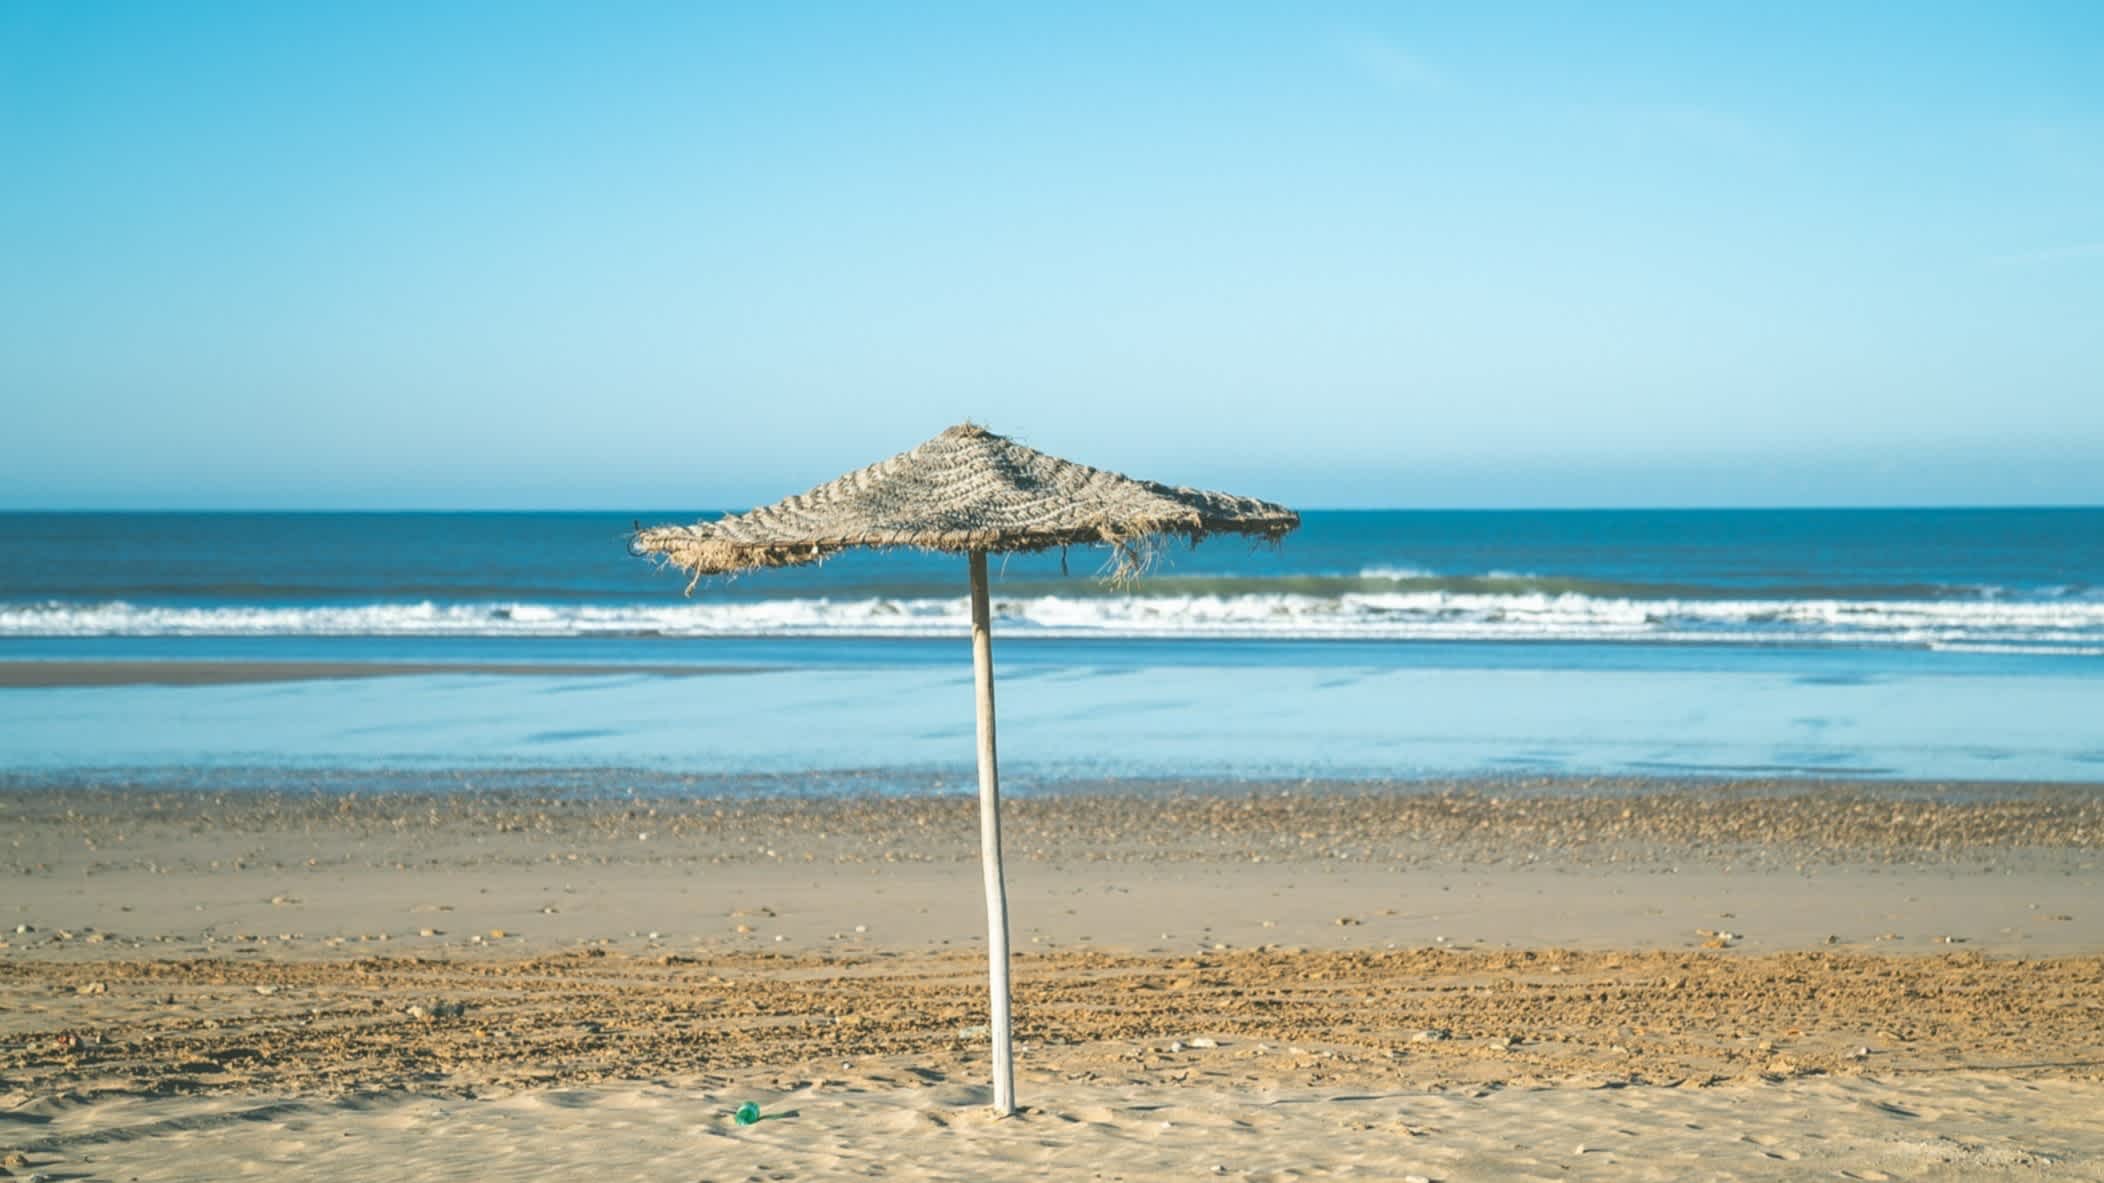 Un parasol de plage sur un sable au Maroc

